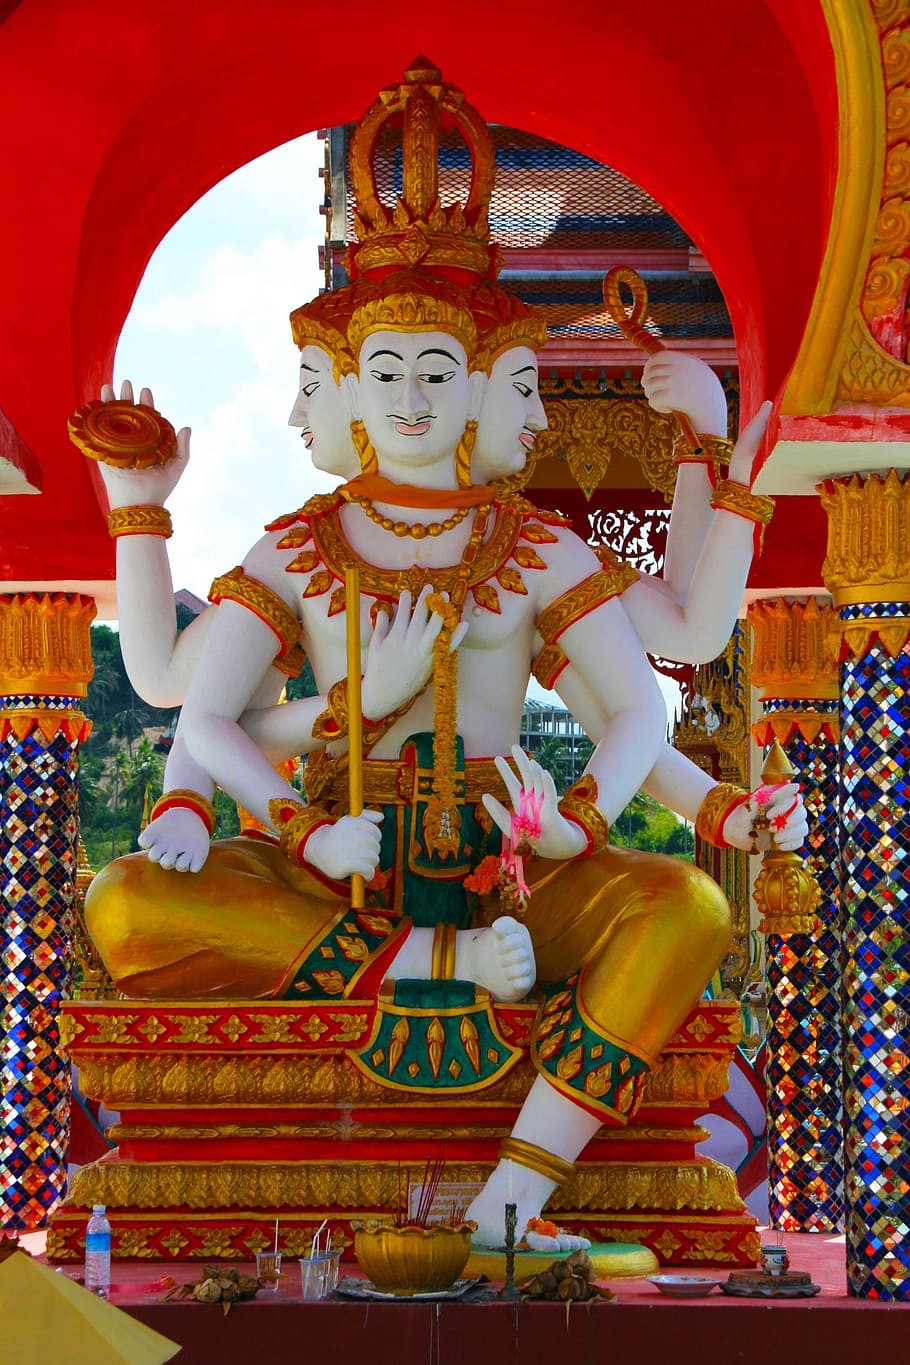 ヒンドゥー教の神の像, ラクシュミ, 仏教, タイ, インド, 文化, 神, ヒンドゥー教, ロータス, 神話